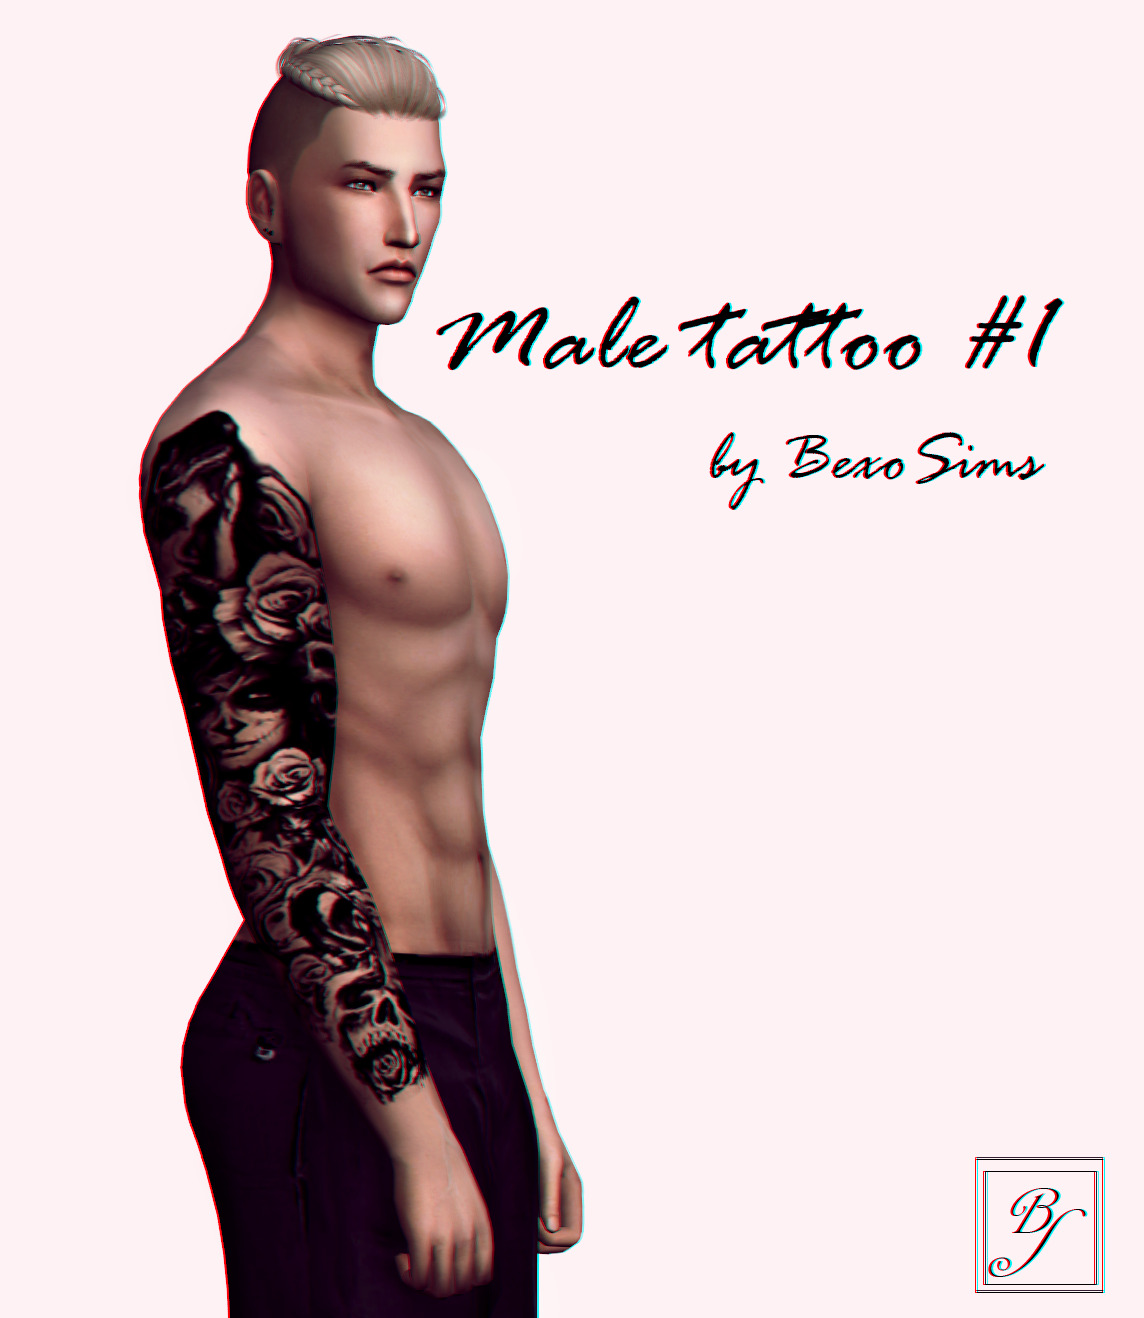 the sims 3 tattoos cc